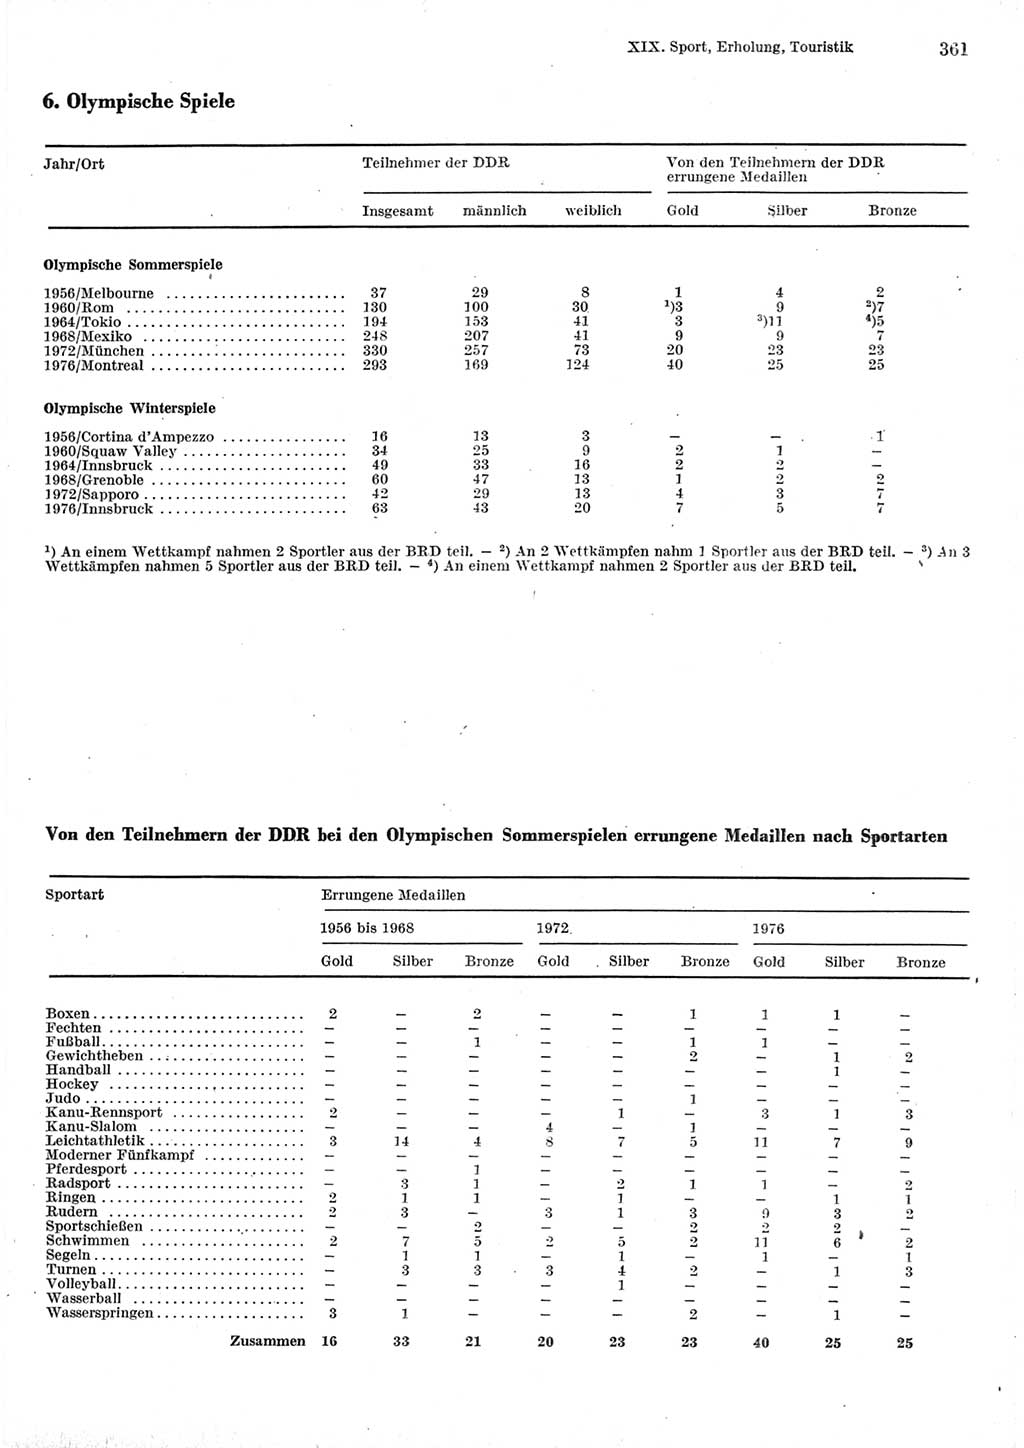 Statistisches Jahrbuch der Deutschen Demokratischen Republik (DDR) 1977, Seite 361 (Stat. Jb. DDR 1977, S. 361)